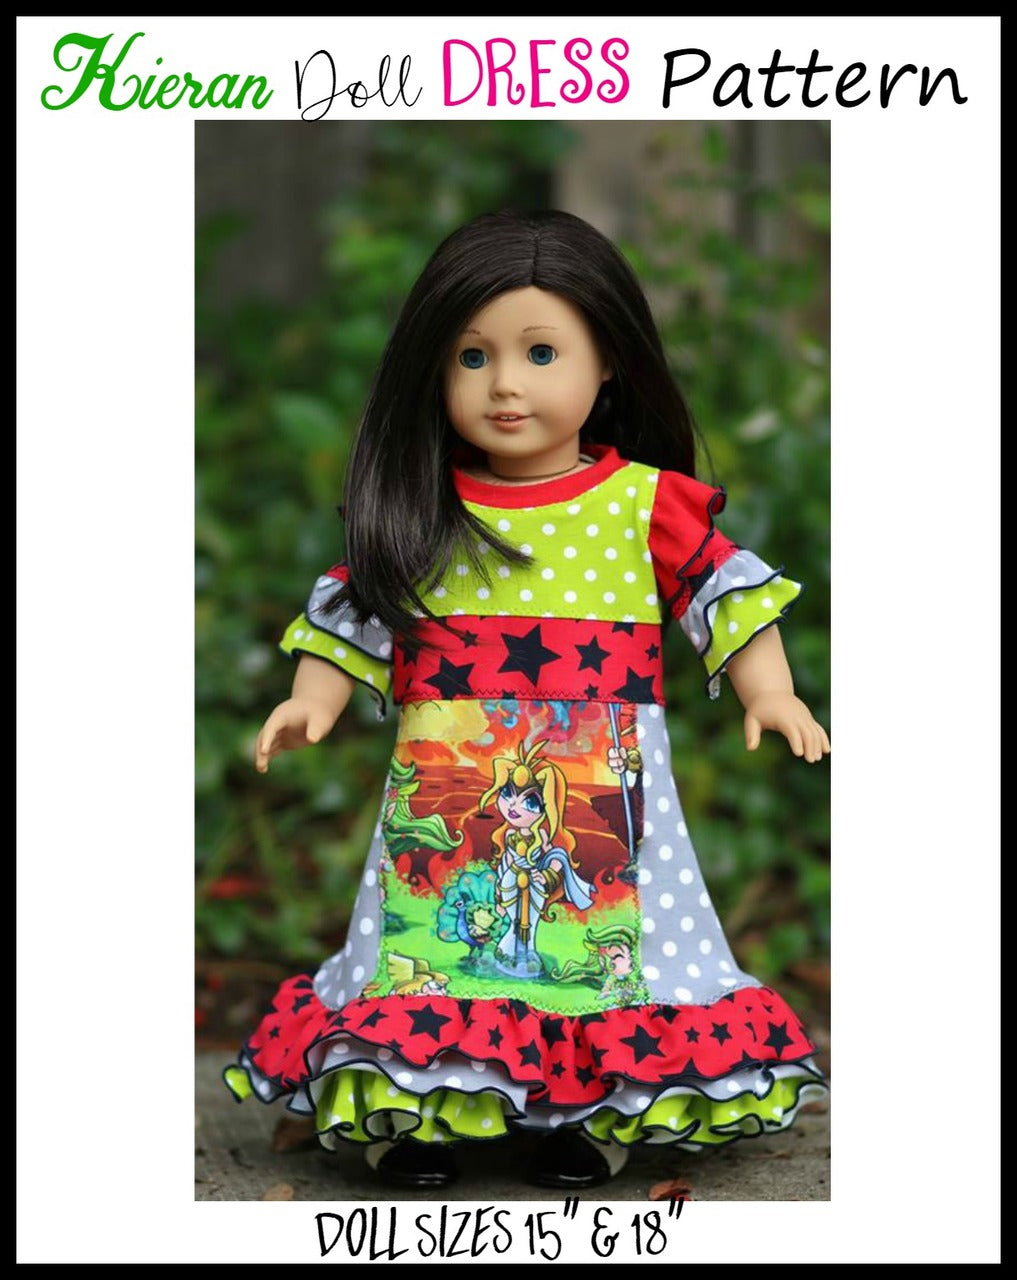 Kieran Doll Dress Pattern - Clearance Sale